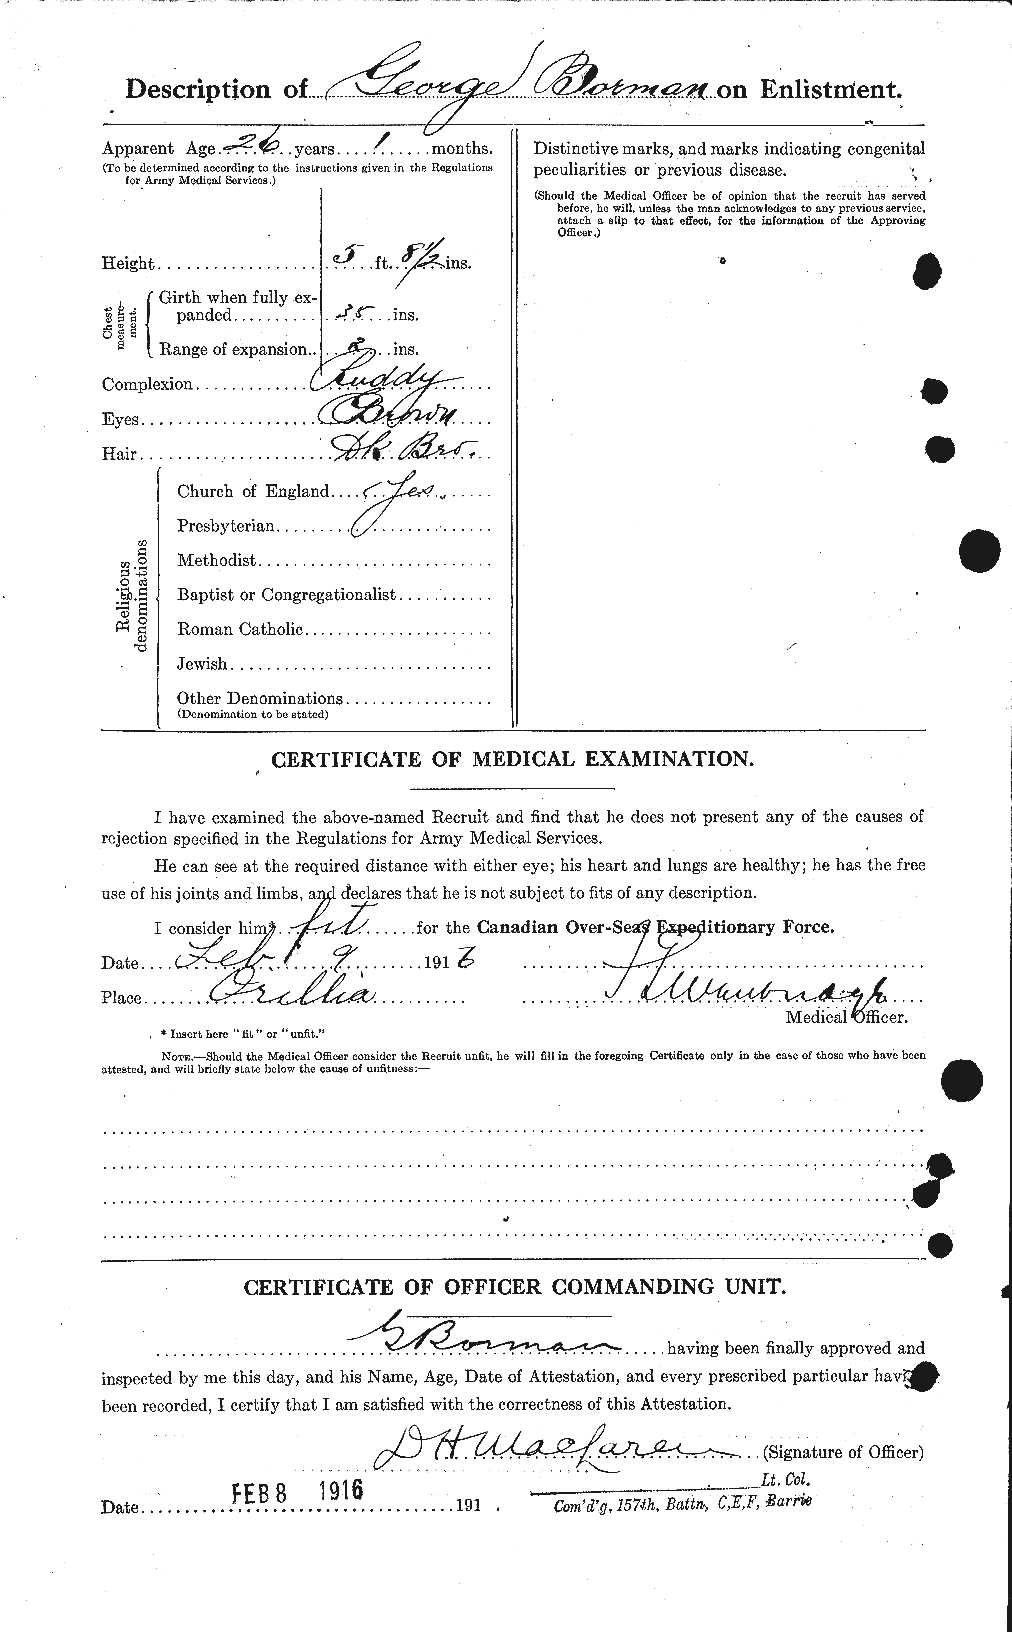 Dossiers du Personnel de la Première Guerre mondiale - CEC 252476b